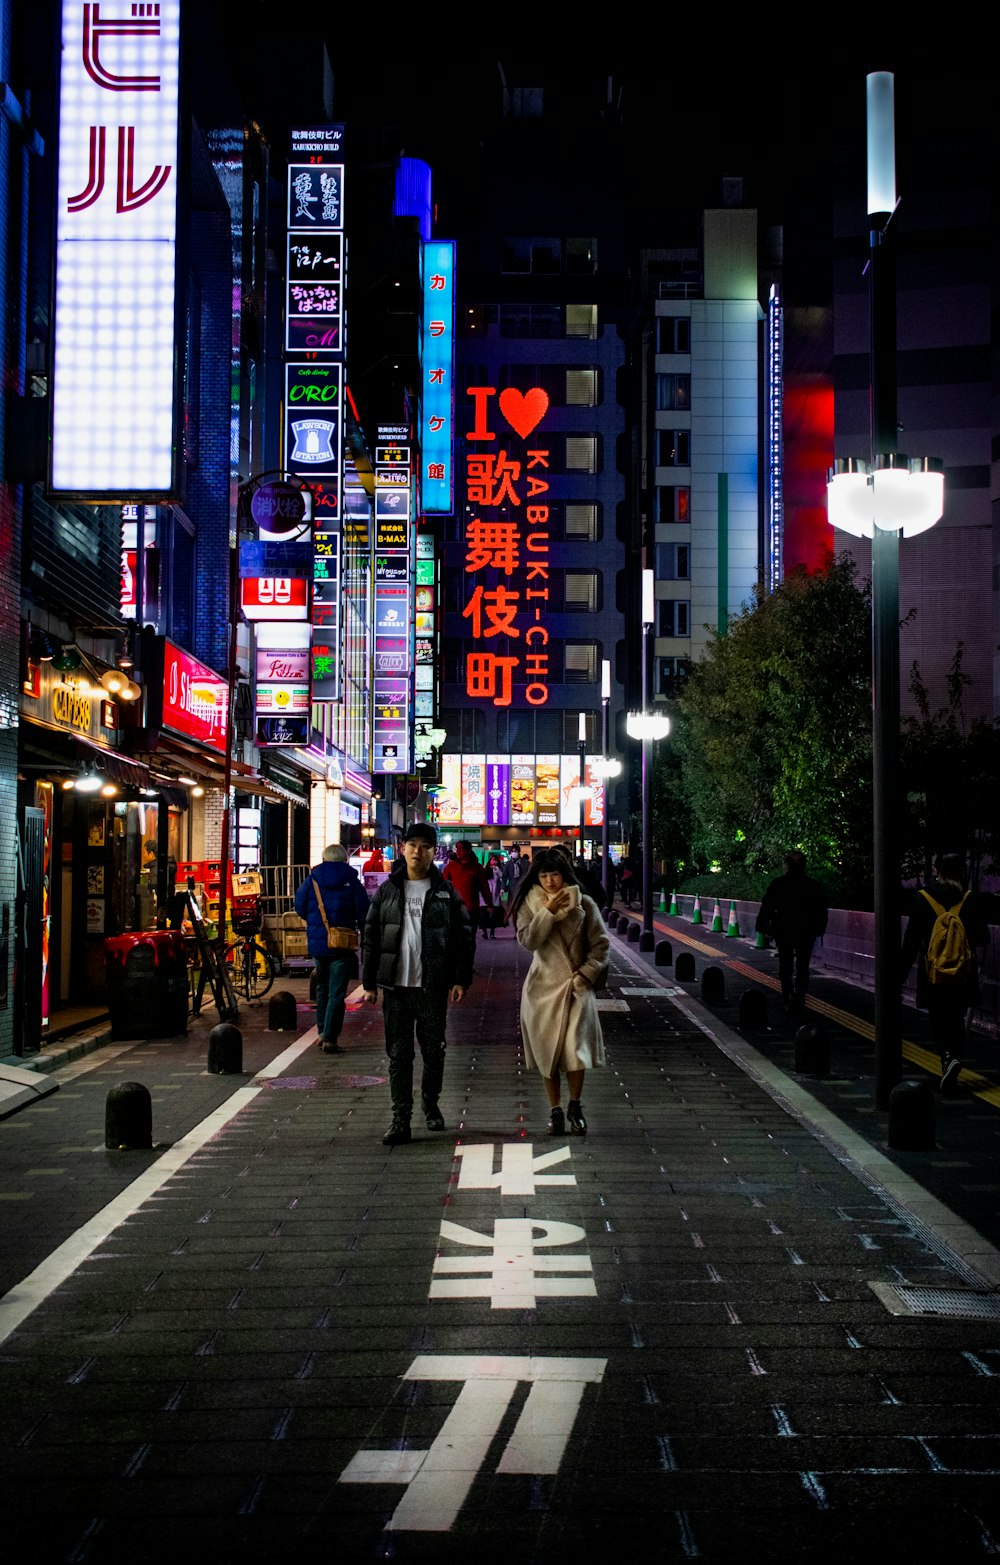 夜の路上で女性のそばに立つ男性